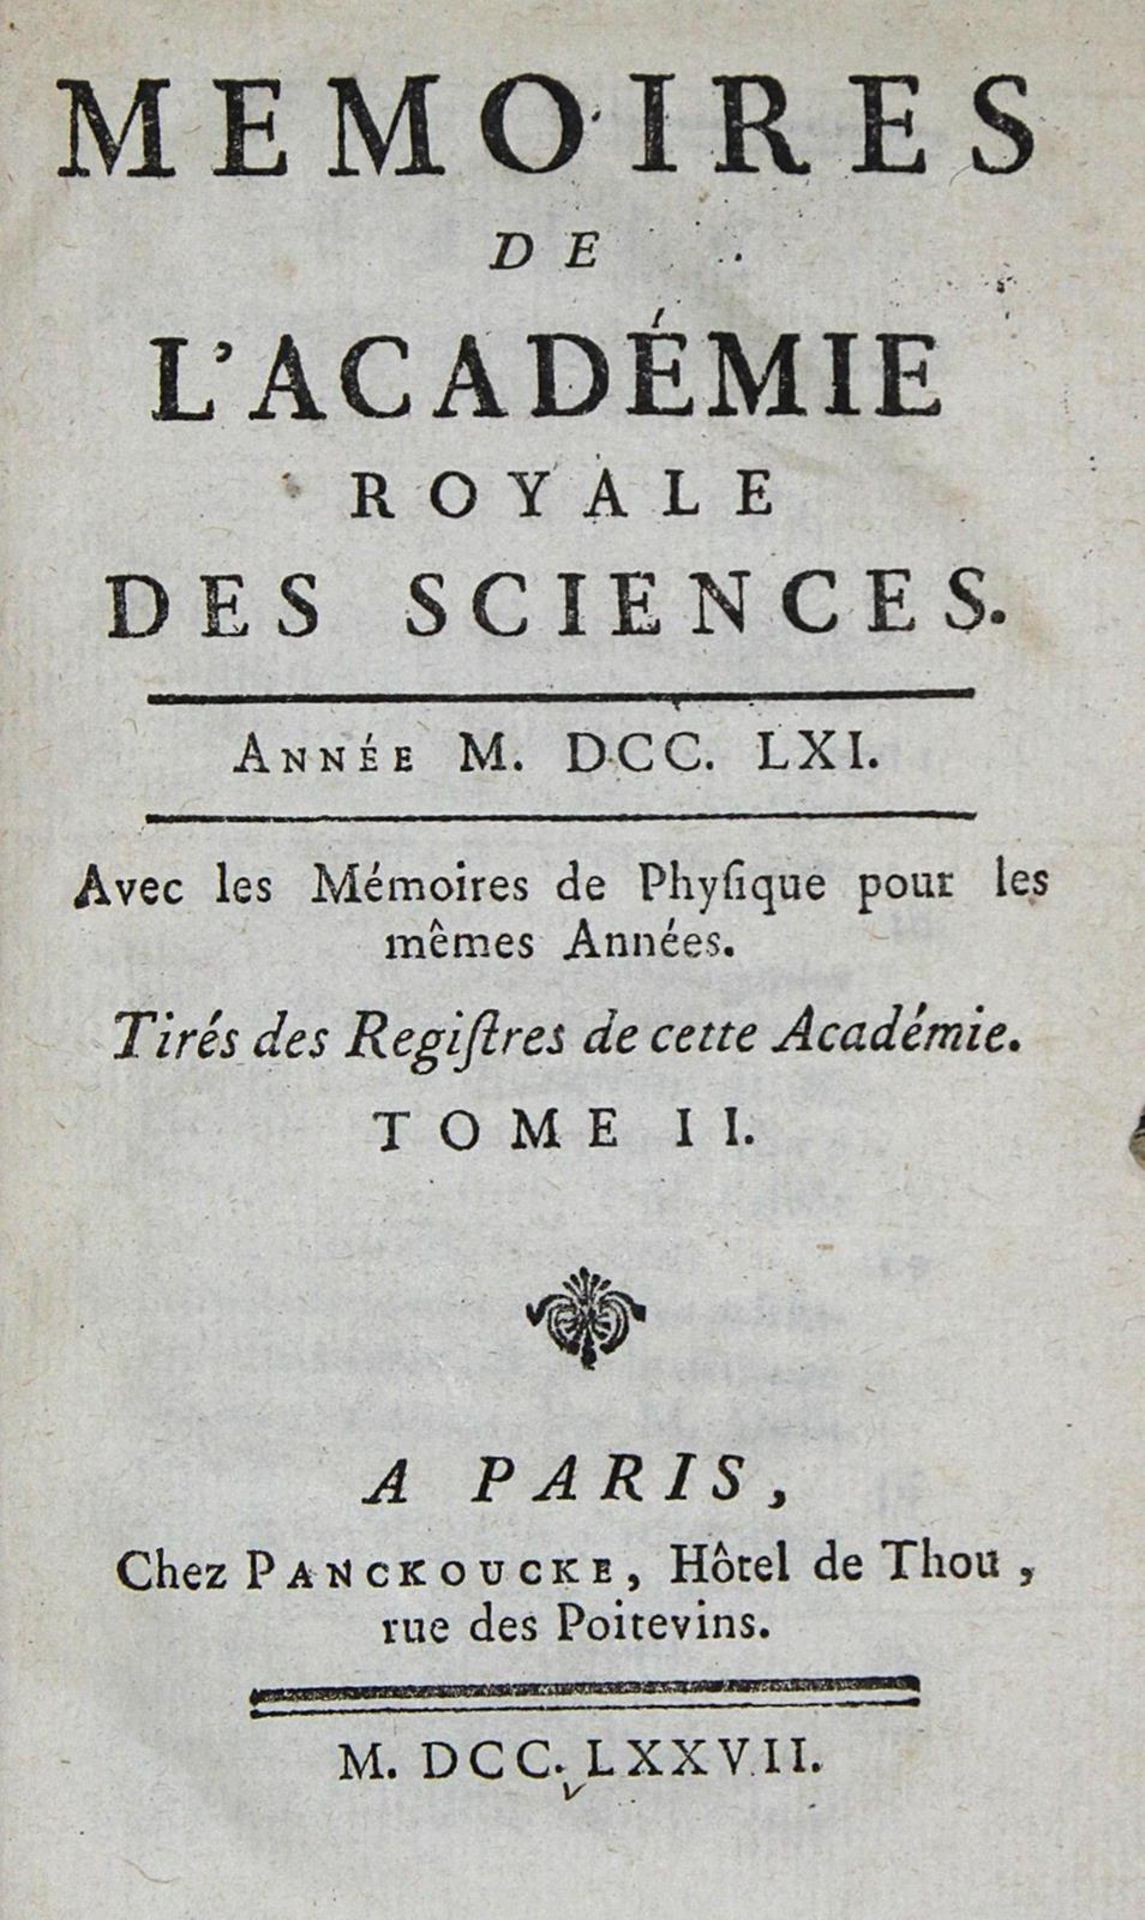 Memoires de l'Academie Royale des Sciences.1761. Avec les memoires de physique...Tome 2. Paris,